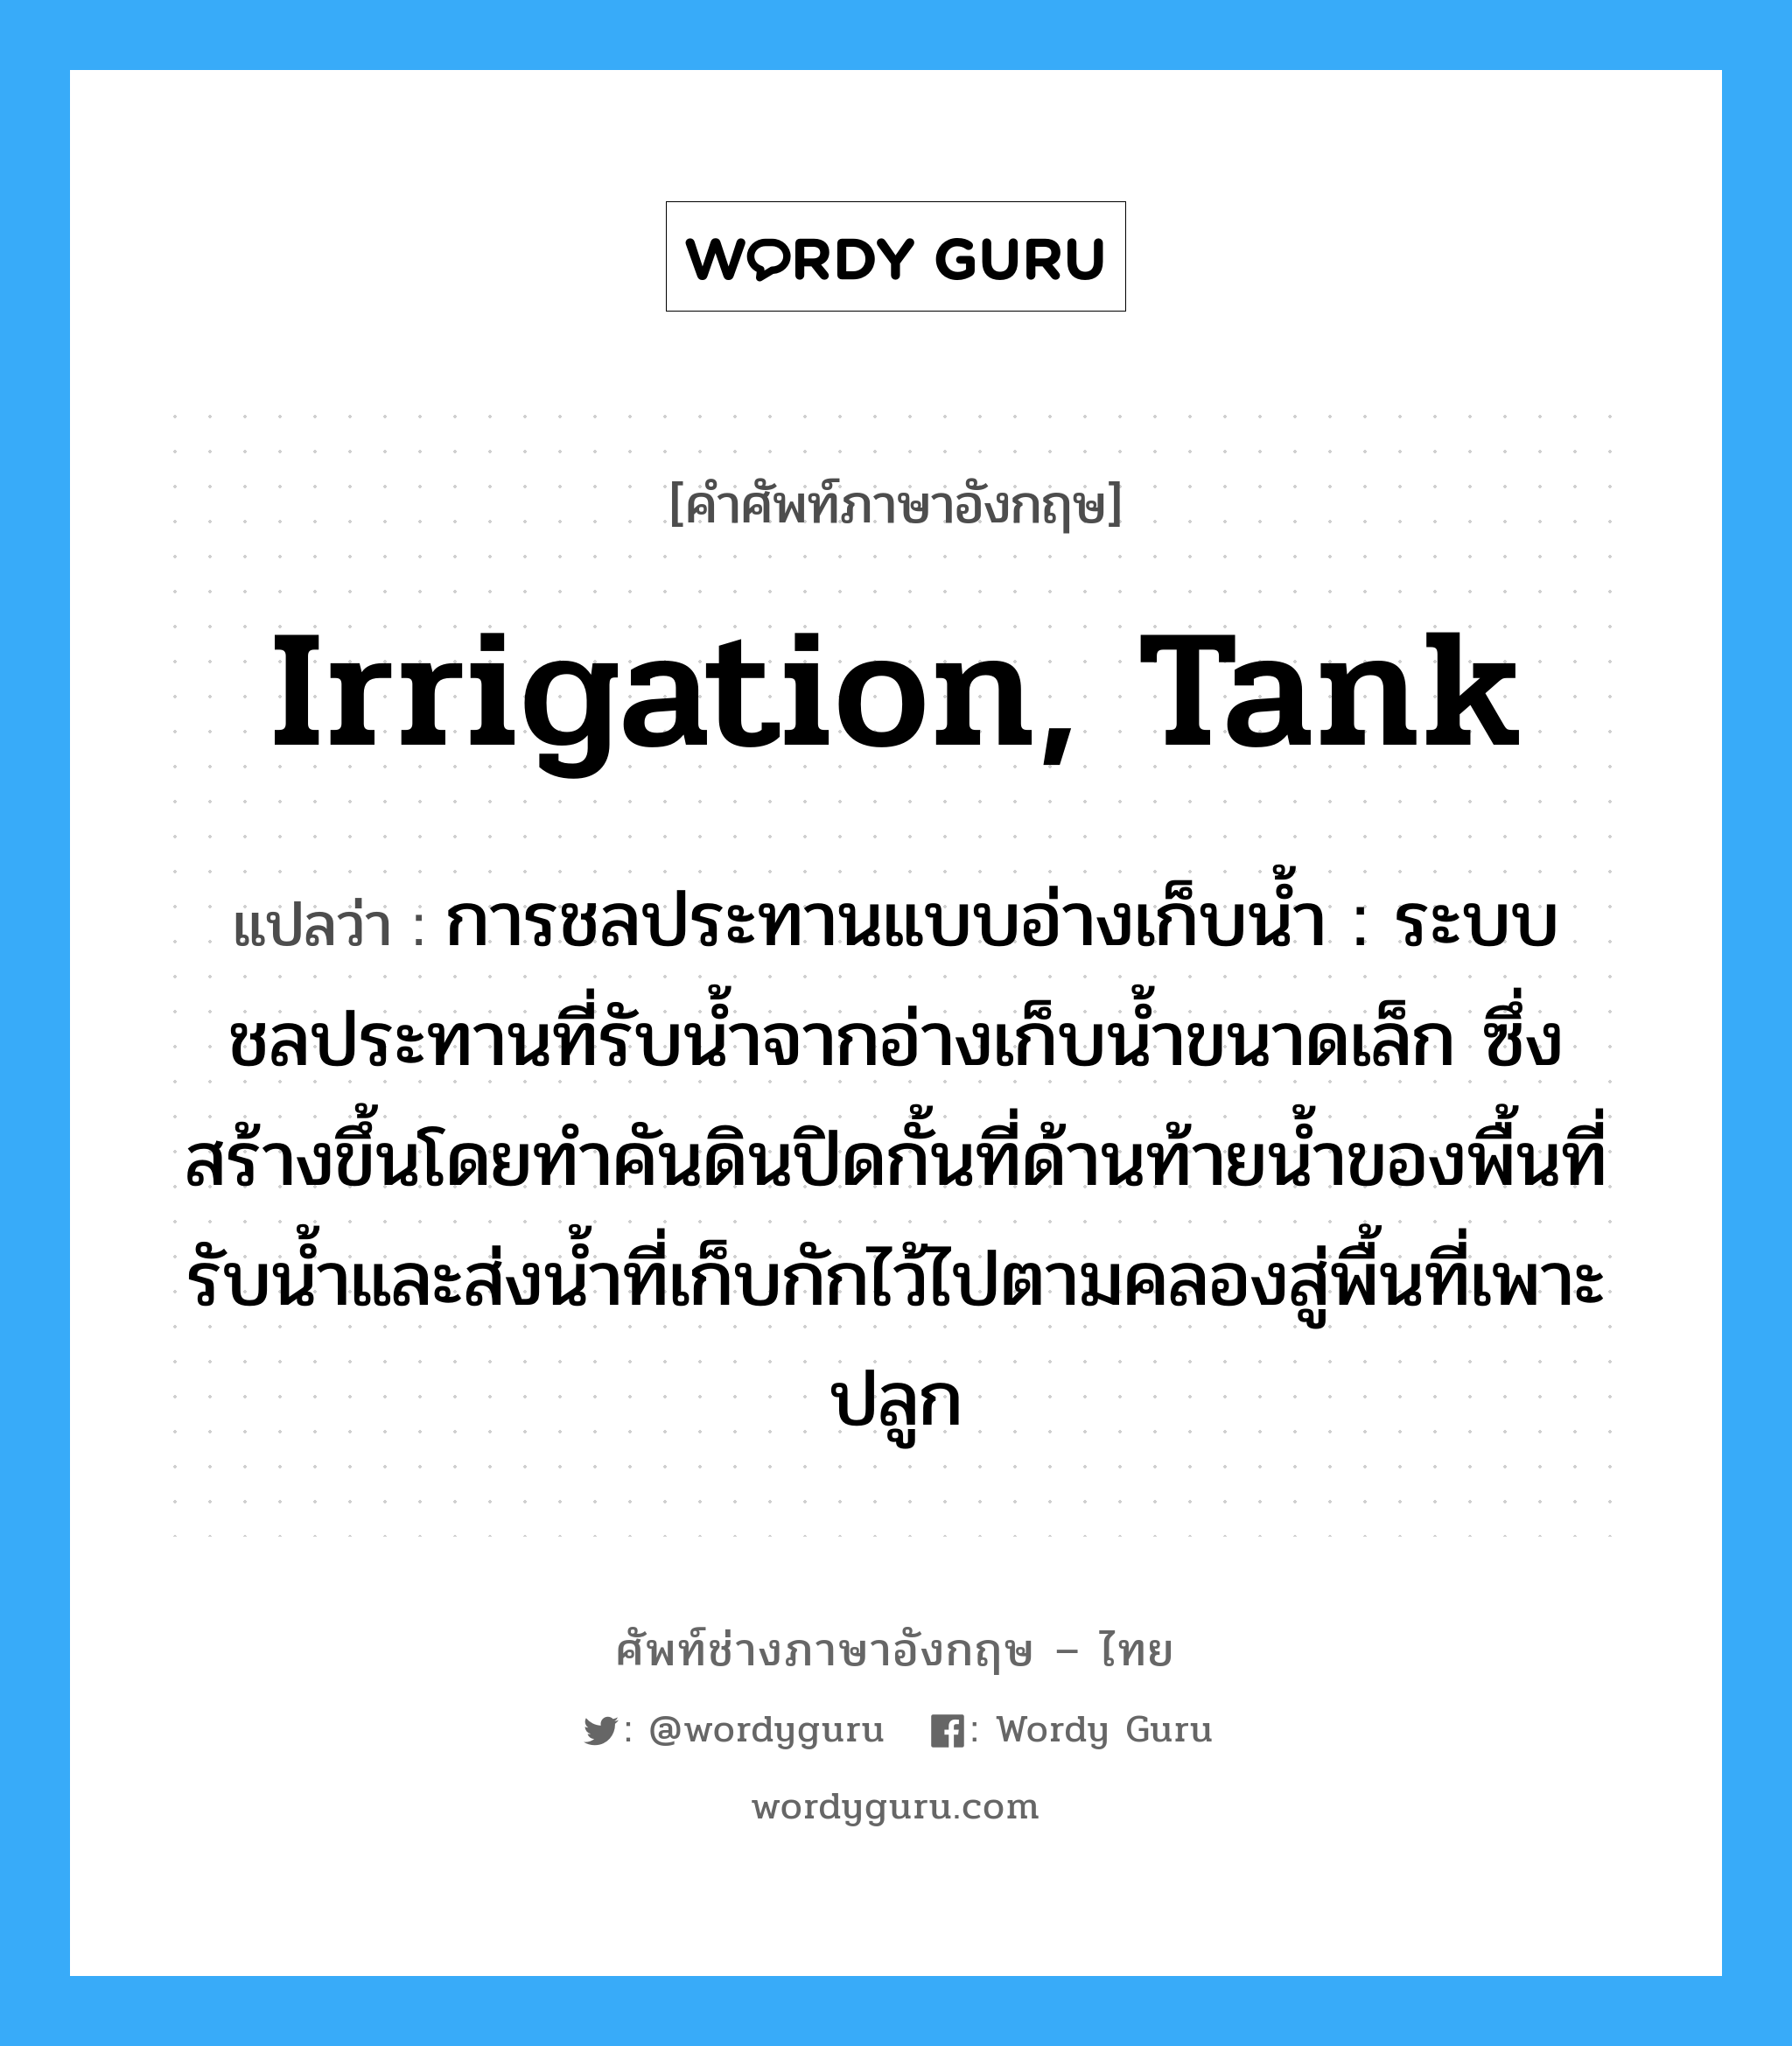 irrigation, tank แปลว่า?, คำศัพท์ช่างภาษาอังกฤษ - ไทย irrigation, tank คำศัพท์ภาษาอังกฤษ irrigation, tank แปลว่า การชลประทานแบบอ่างเก็บน้ำ : ระบบชลประทานที่รับน้ำจากอ่างเก็บน้ำขนาดเล็ก ซึ่งสร้างขึ้นโดยทำคันดินปิดกั้นที่ด้านท้ายน้ำของพื้นที่รับน้ำและส่งน้ำที่เก็บกักไว้ไปตามคลองสู่พื้นที่เพาะปลูก